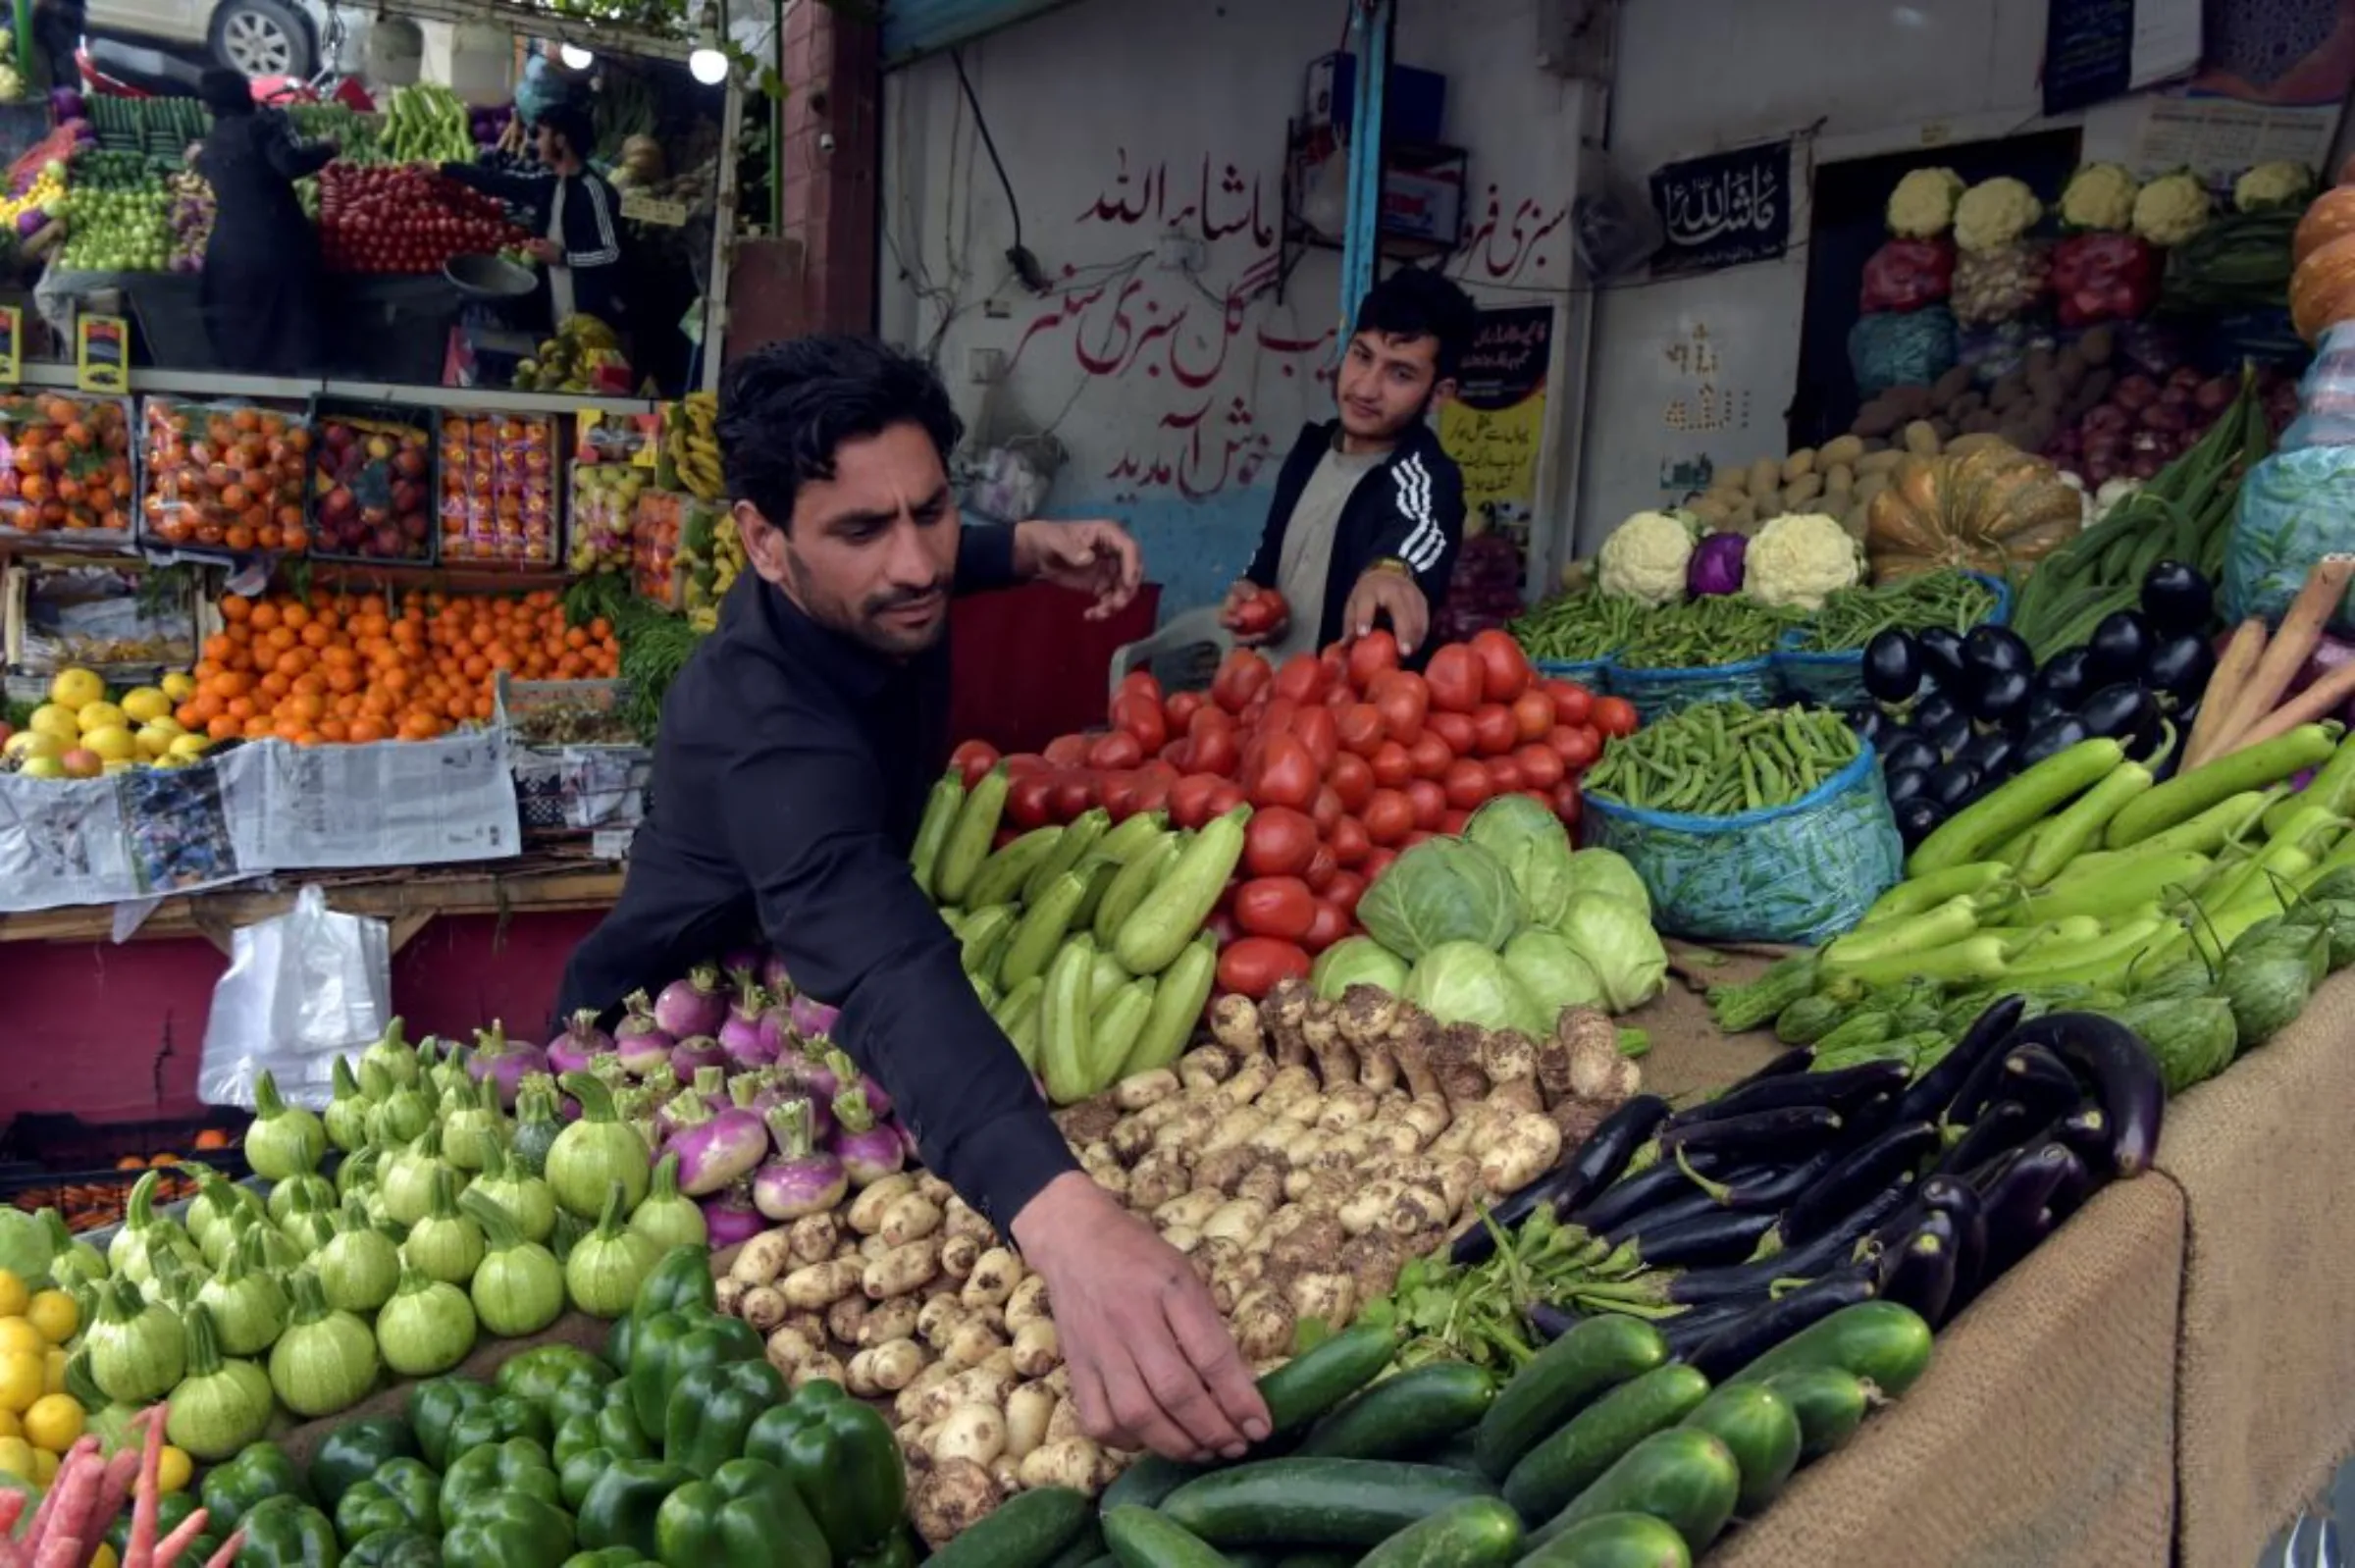 Afghan refugee, Masoom Jan, arranges vegetables at a shop in Peshawar, Pakistan on March 8, 2022